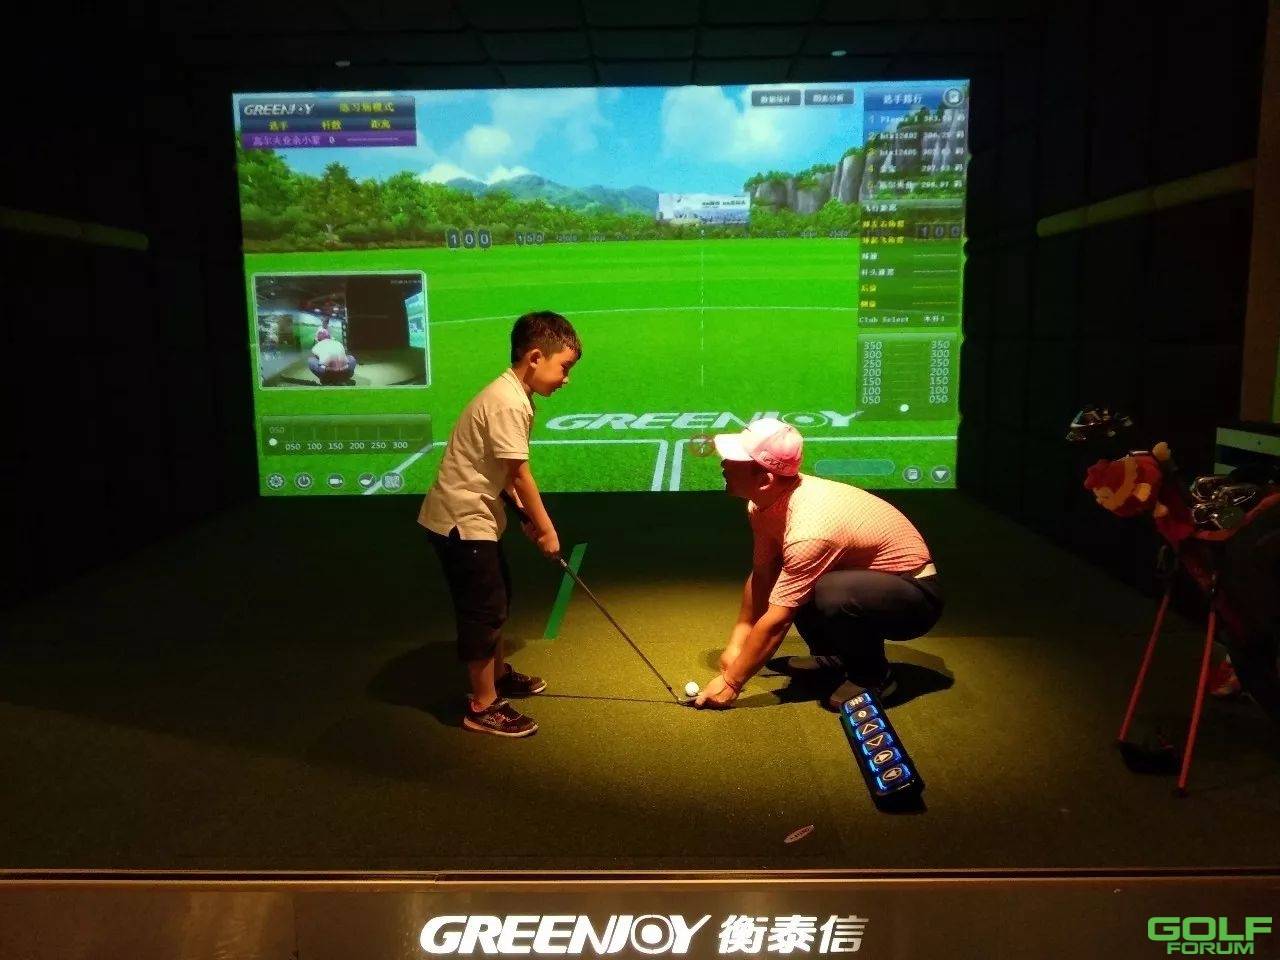 又有一家悦球青少年高尔夫学院开业啦，欢迎杭州的小朋友们来玩呀！ ...